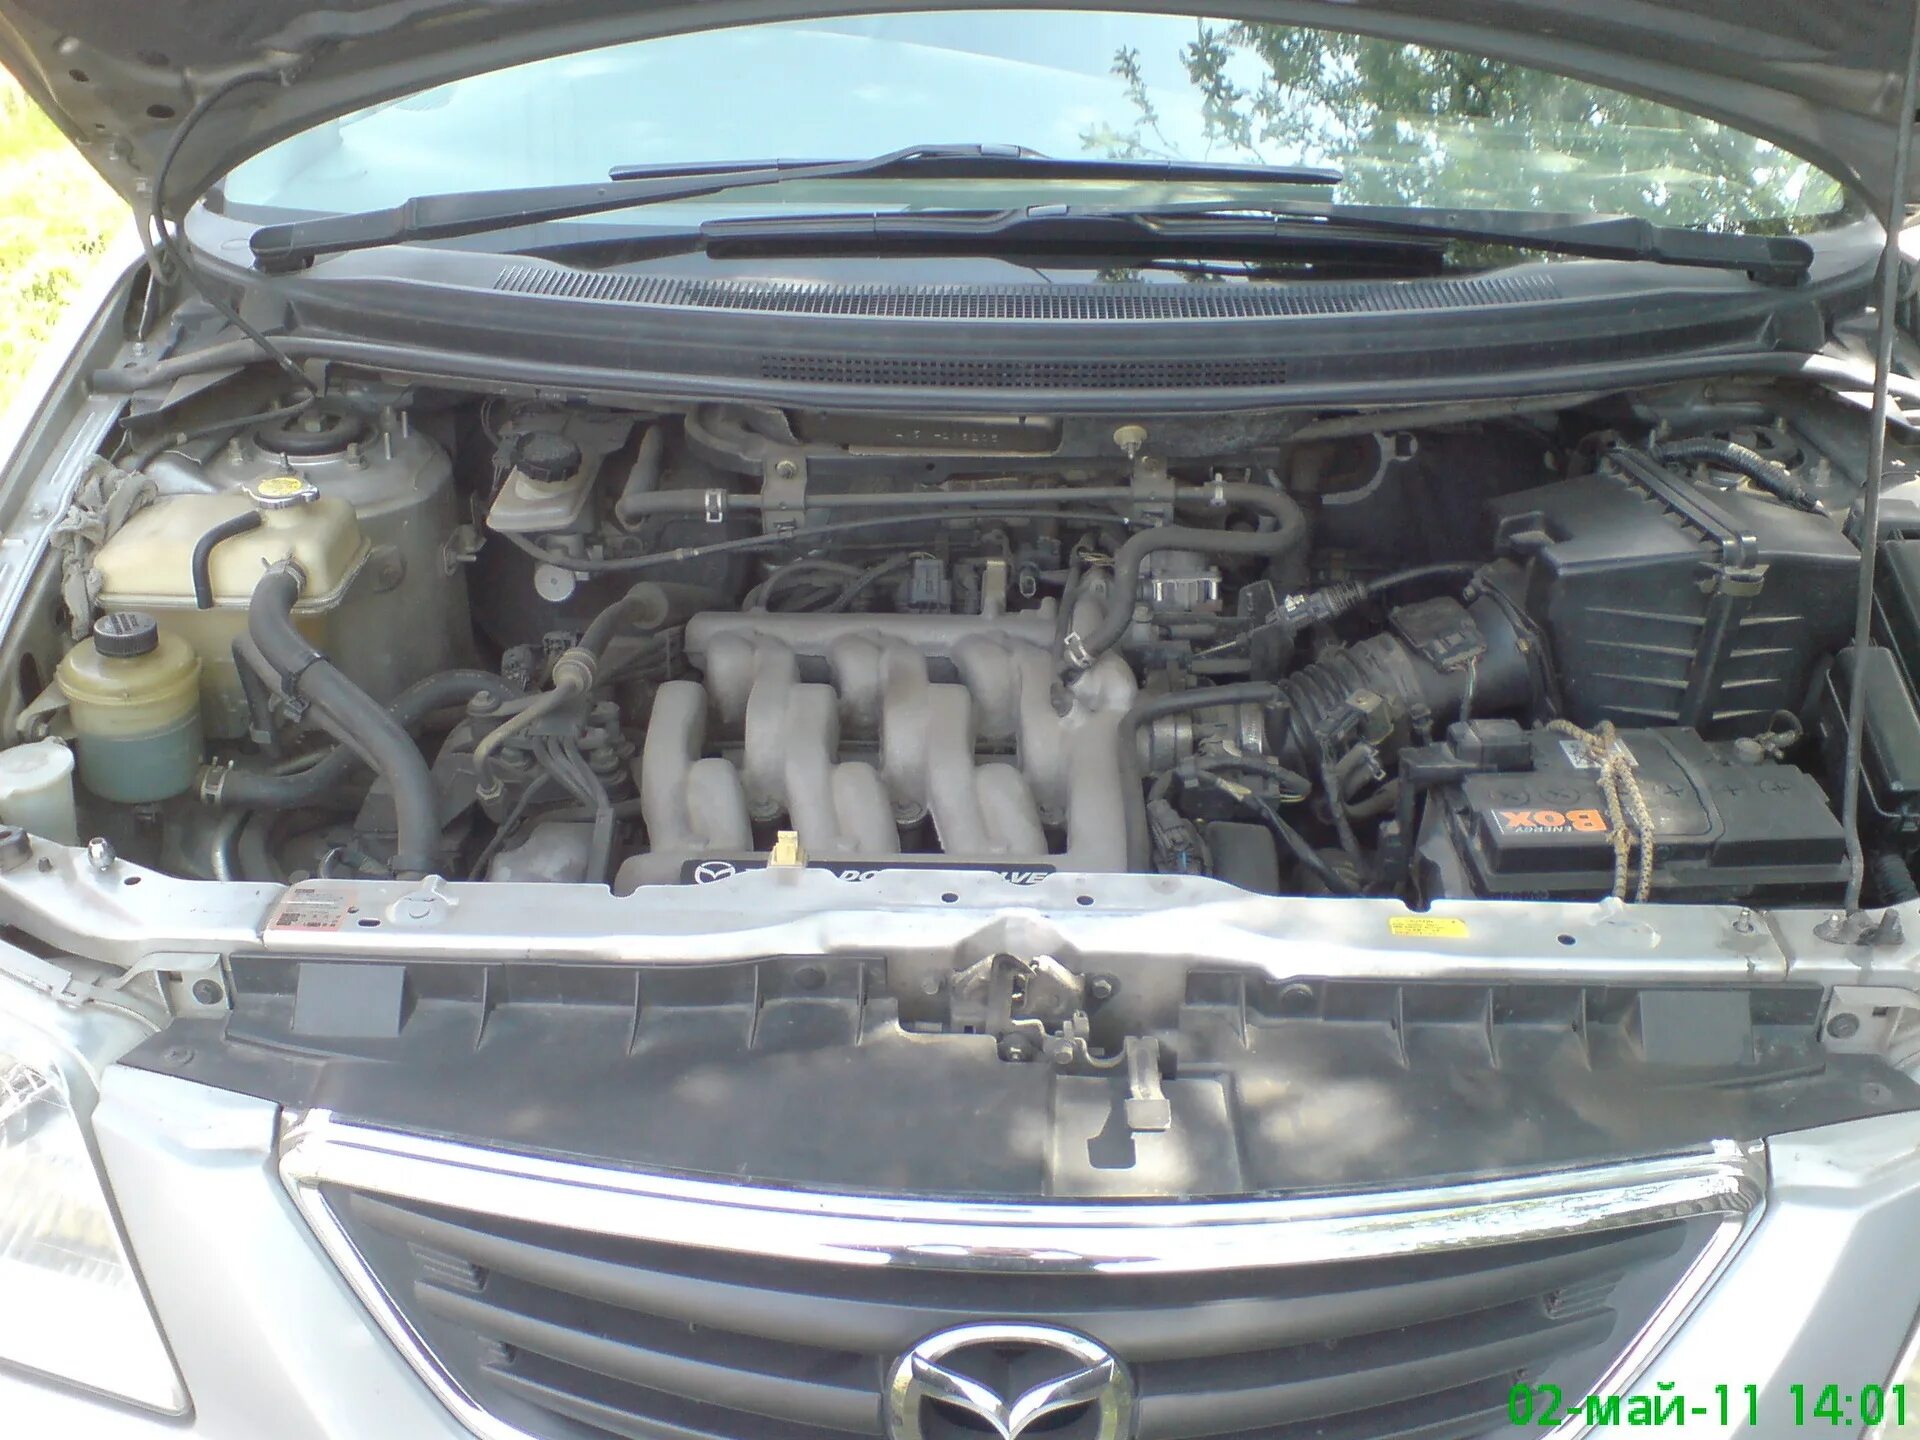 Mazda MPV 2001 ДВС 2.5. Mazda MPV 2000 2.5 мотор. Mazda MPV 2 под капотом. Mazda MPV 2005 двигатель 2.3. Двигатель мазда мпв 2.5